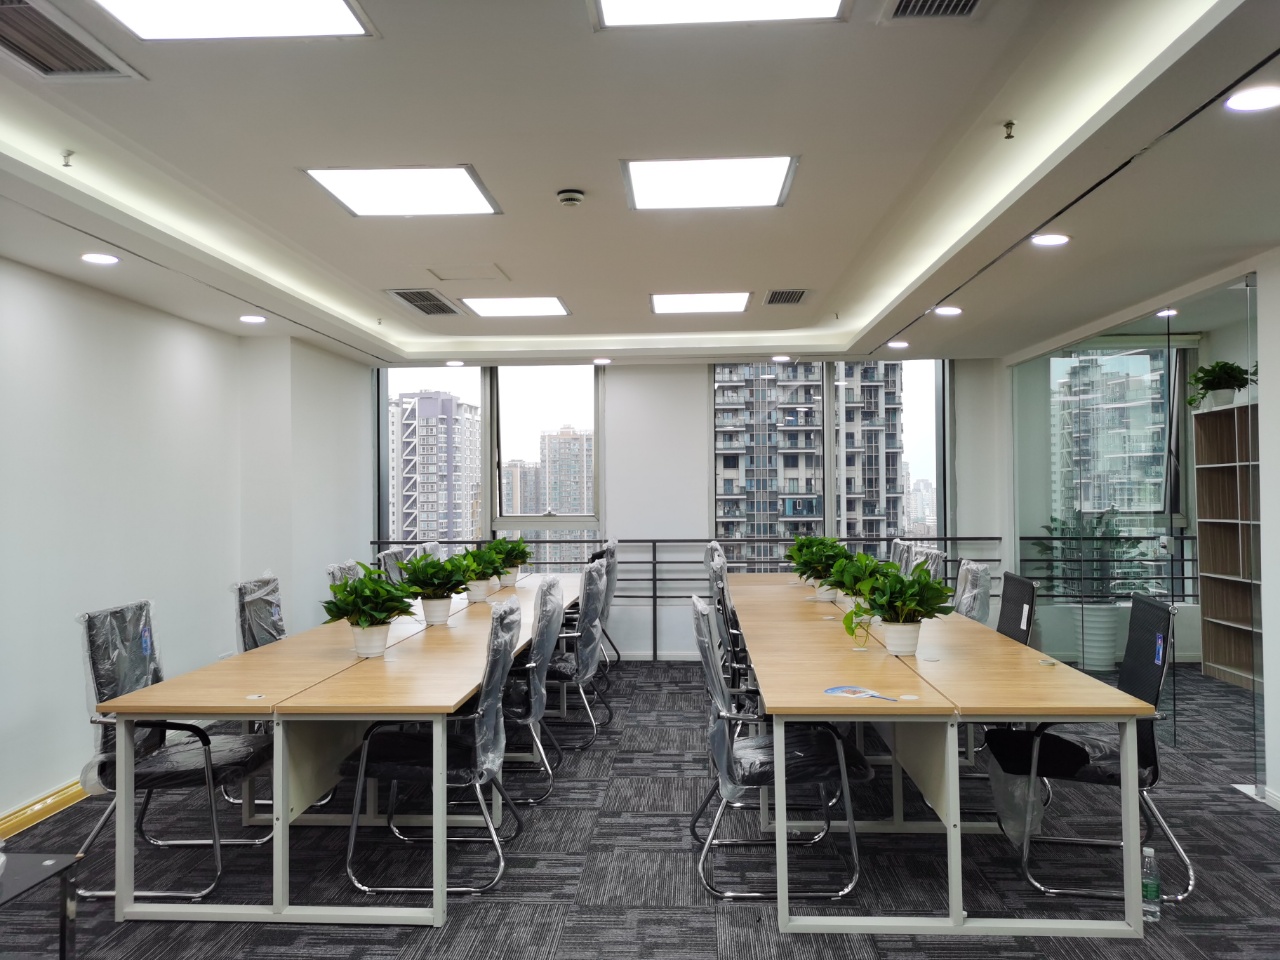 锦江区花样年喜年广场精装168平办公室 户型方正 采光优秀 生活便利